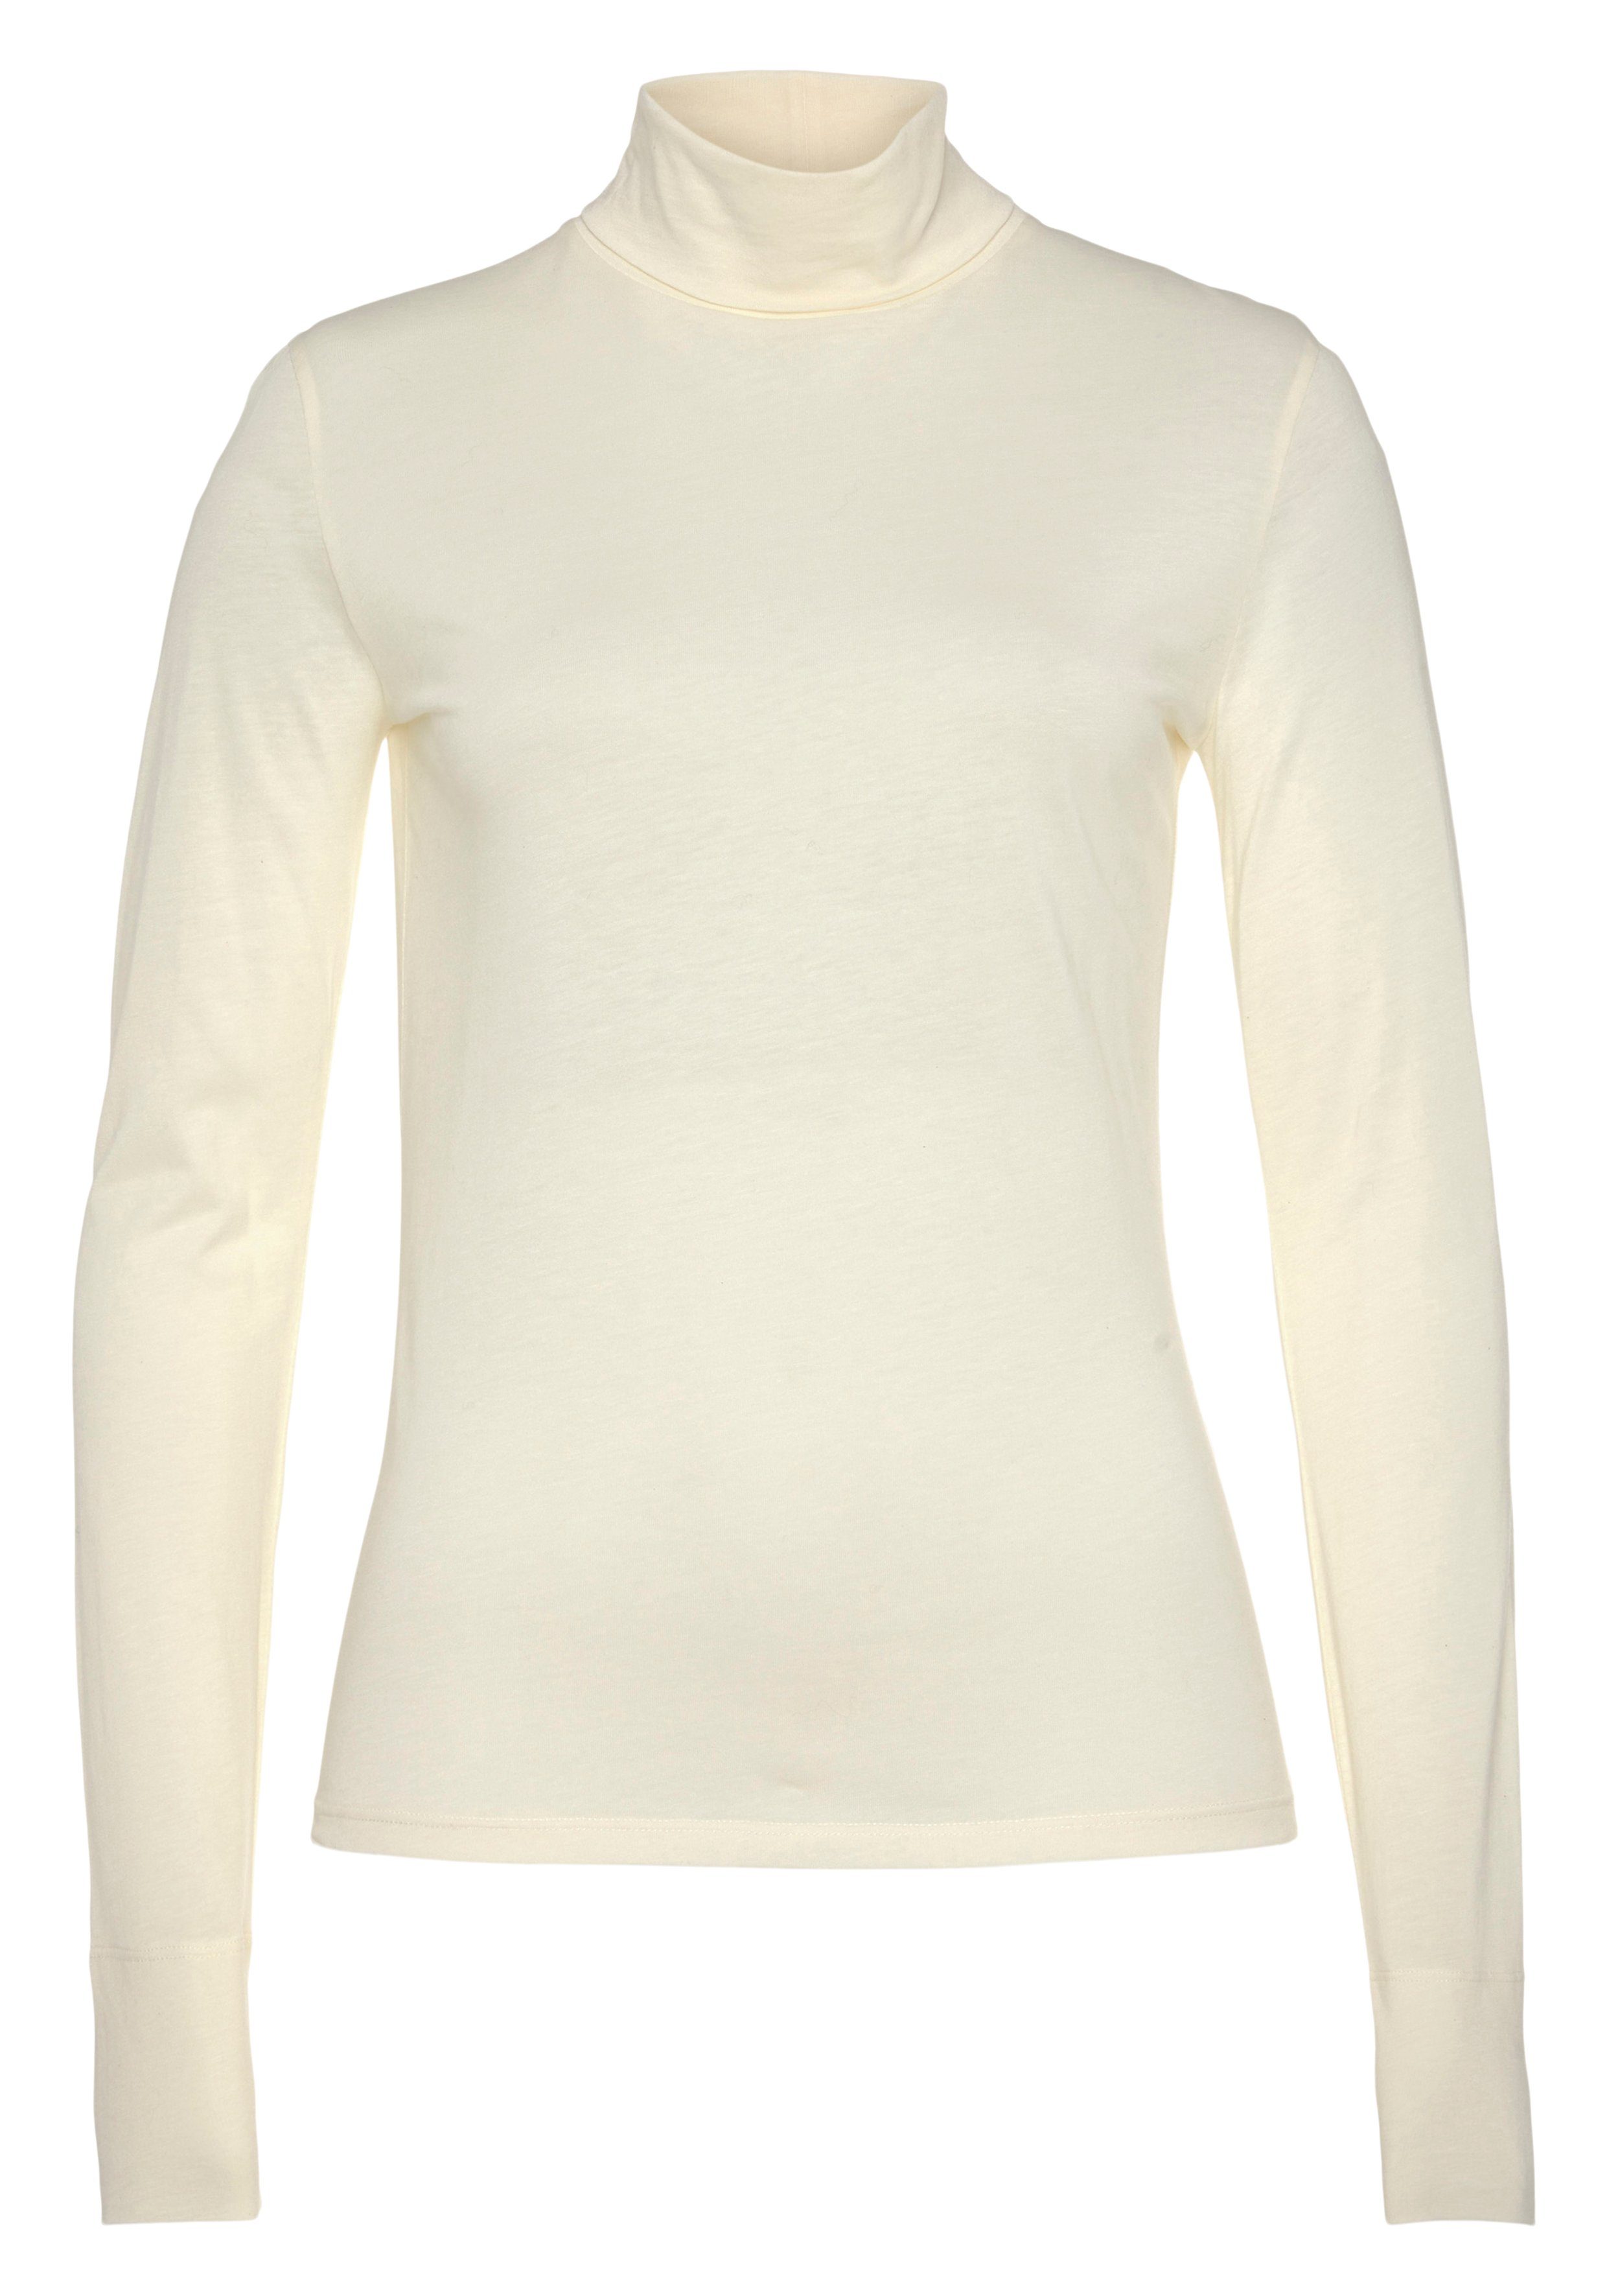 BOSS ORANGE Langarmshirt C_Emerie_2 Premium Basic, hochwertige atmungsaktive Qualität, Stehkragen, Rolli Open White